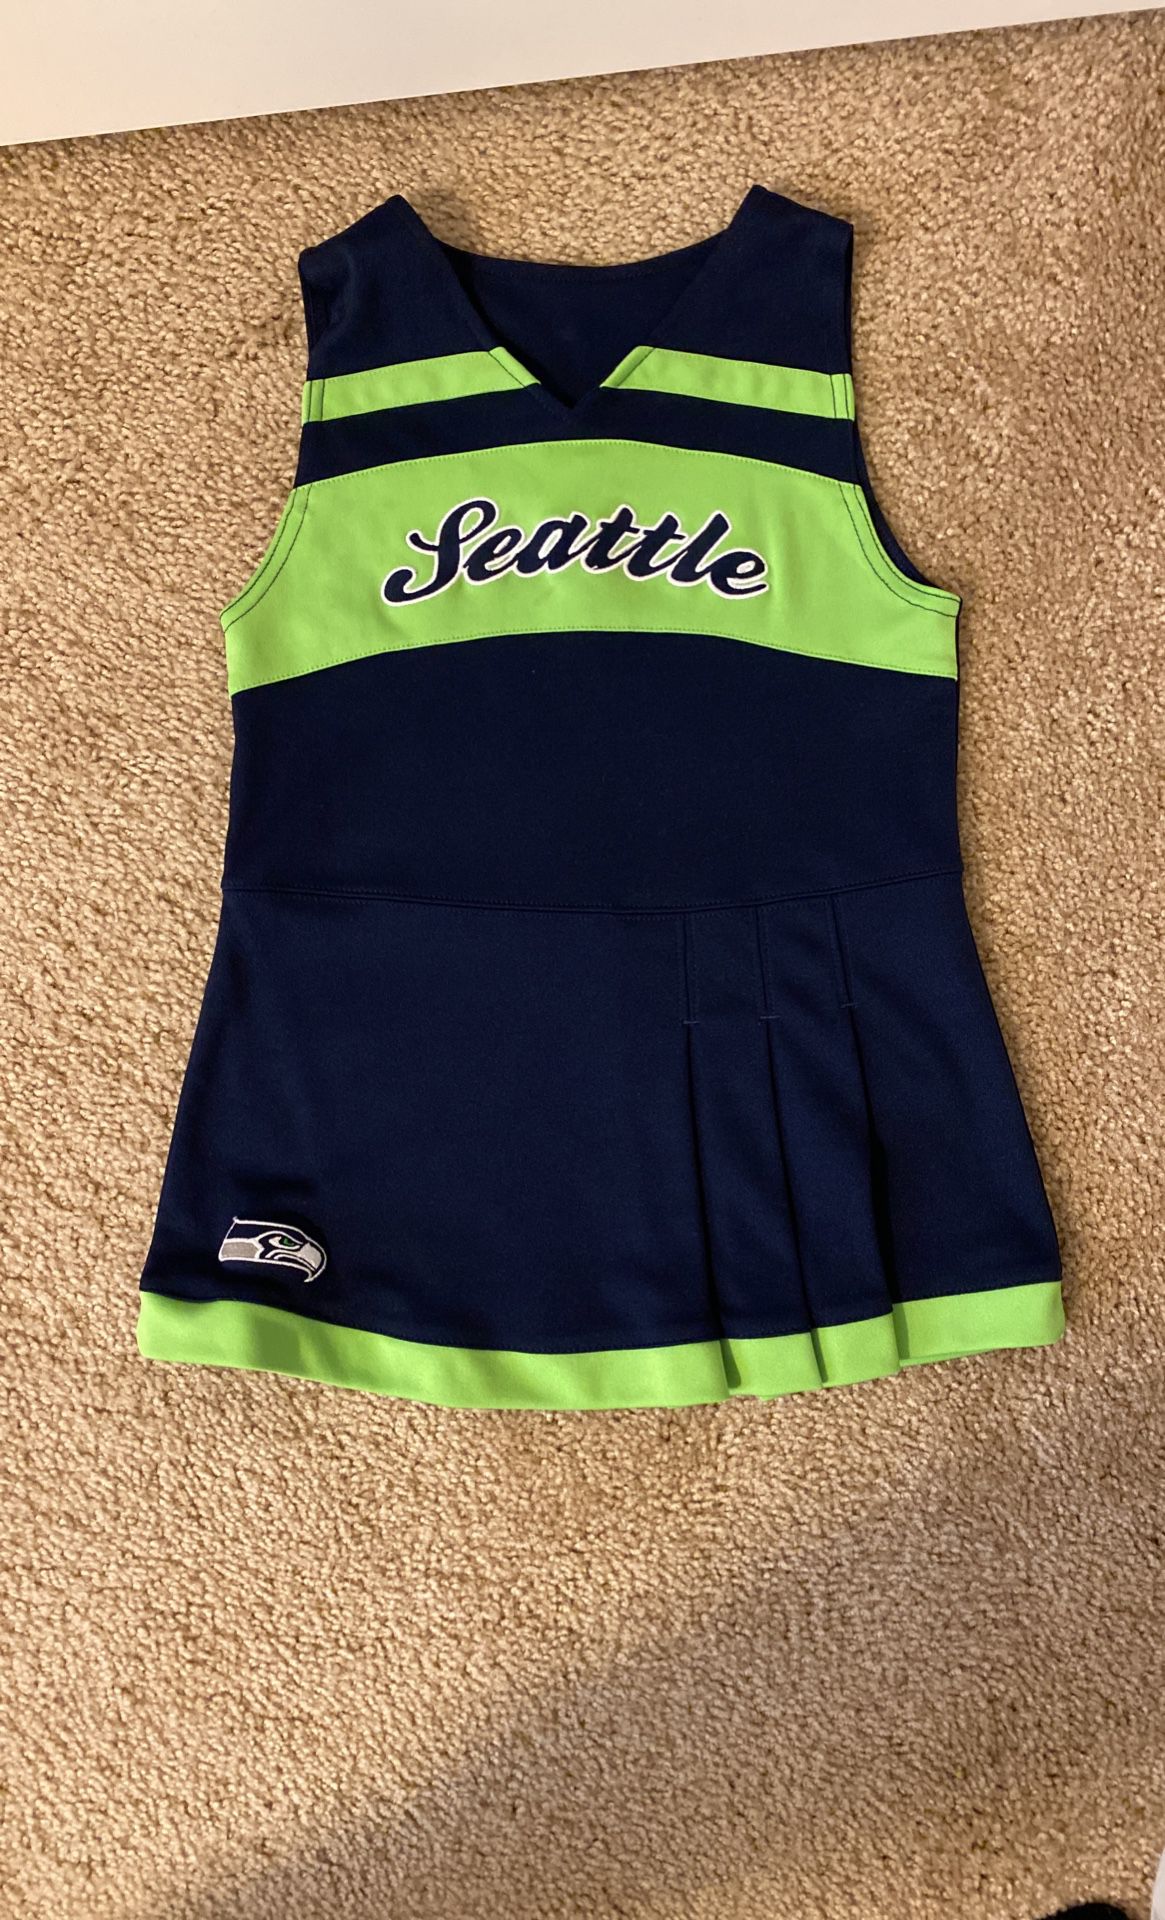 Seahawks Cute Dress Size Medium 5/6